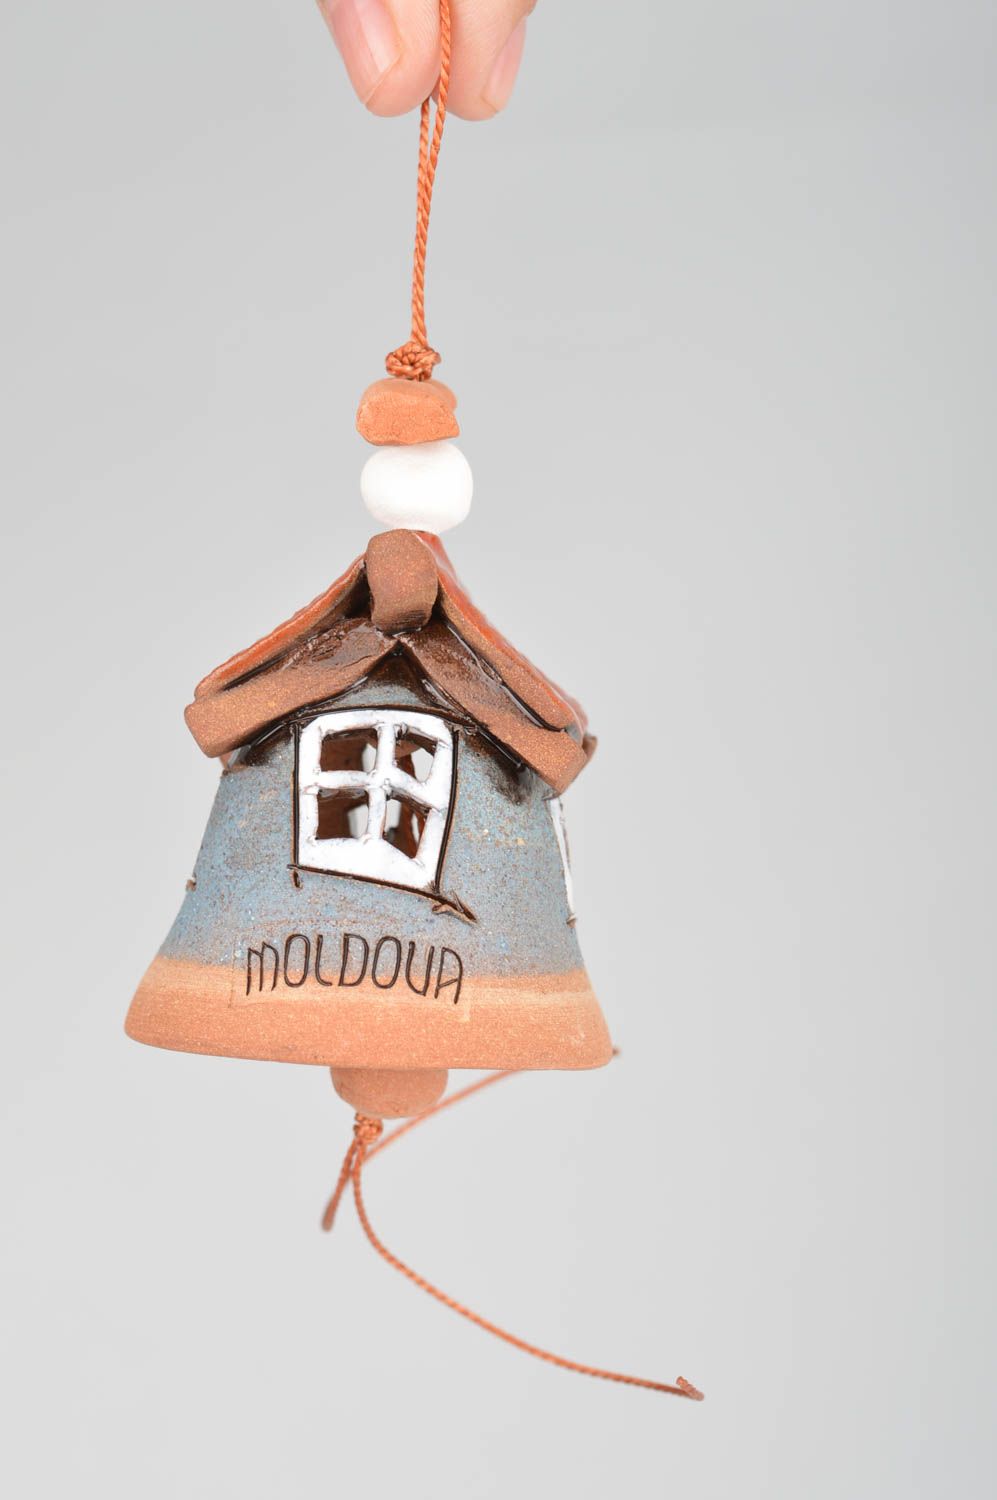 Глиняный колокольчик расписанный глазурью ручной работы Сине-красный домик  фото 3